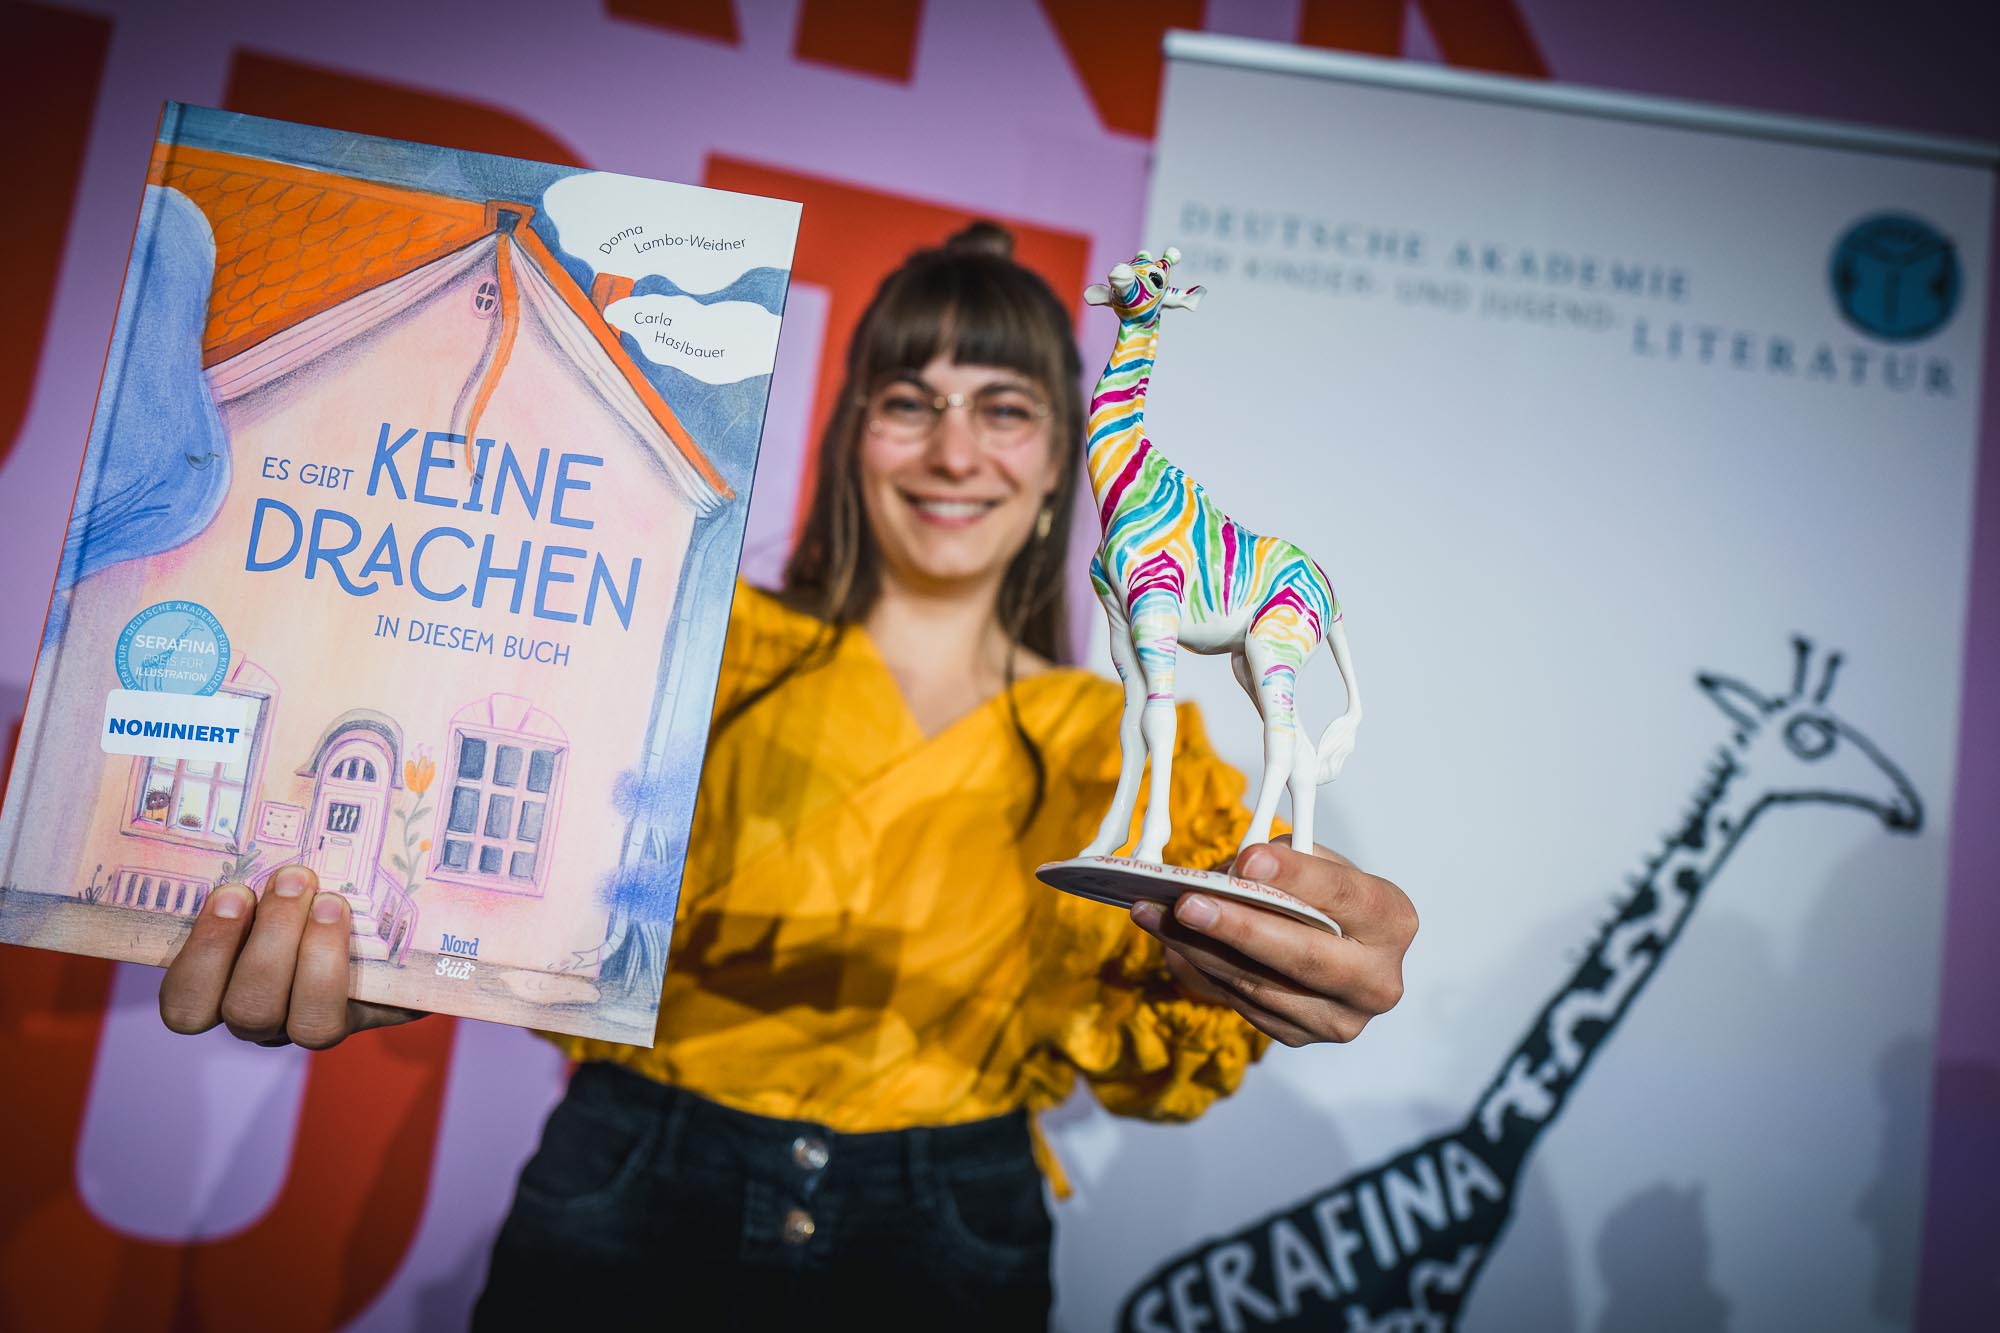 Serafina-Preisträgerin Carla Haslbauer mit ihrem ausgezeichneten Buch und der Porzellan-Serafina (Foto: Patrick Reymann)